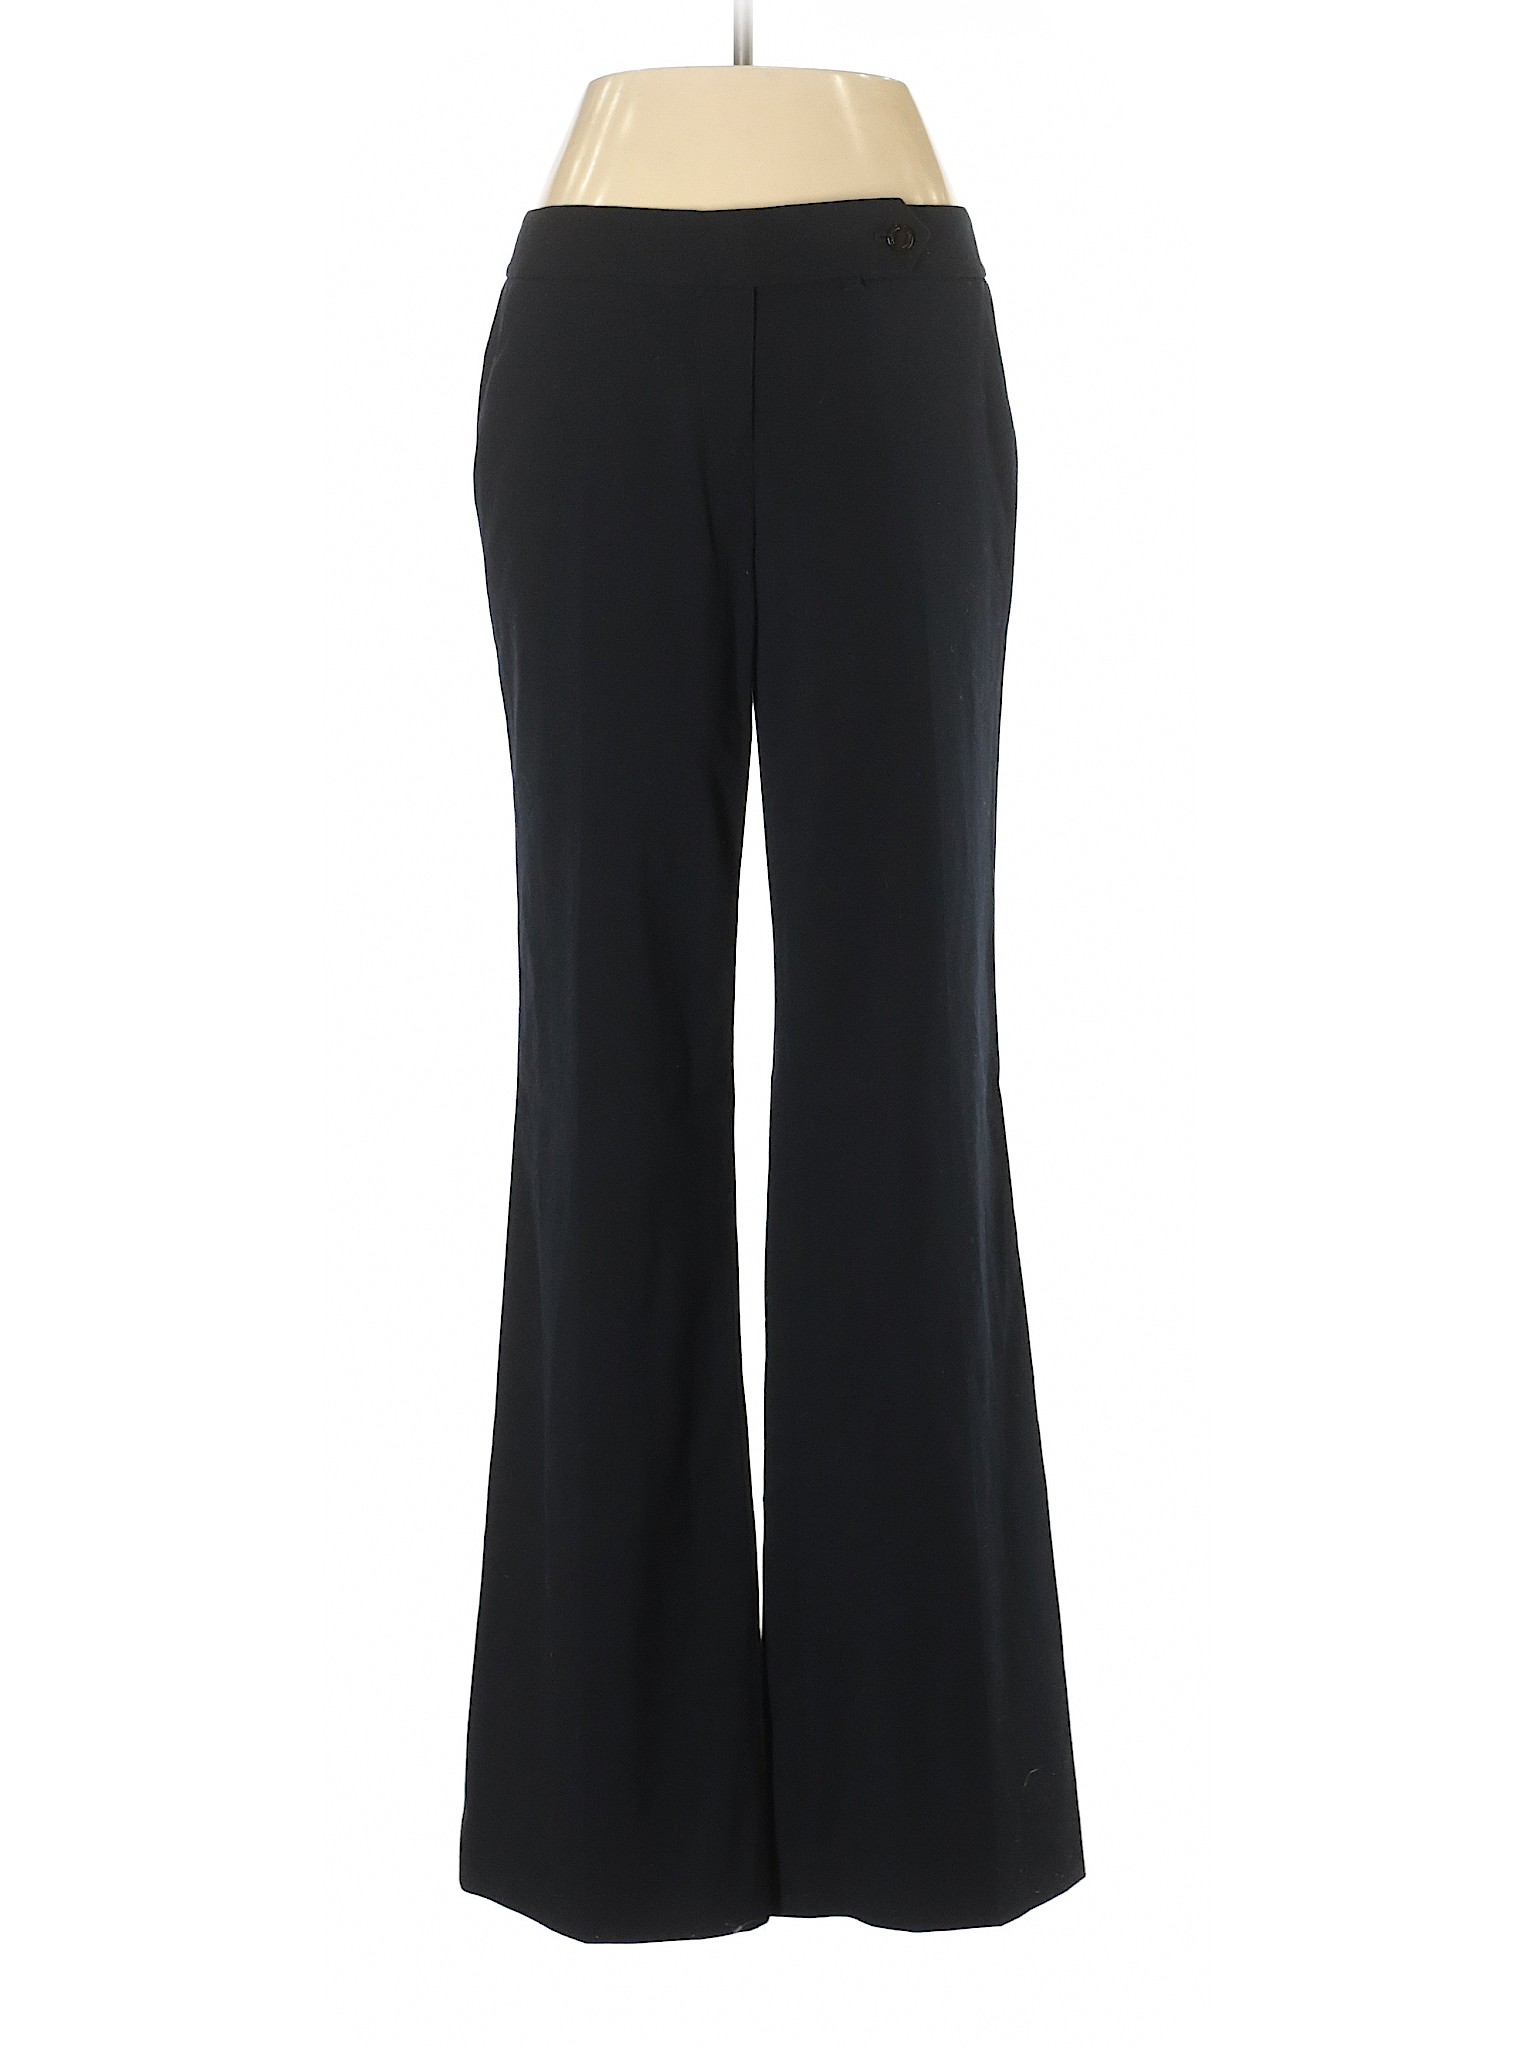 Calvin Klein Women Black Dress Pants 2 | eBay